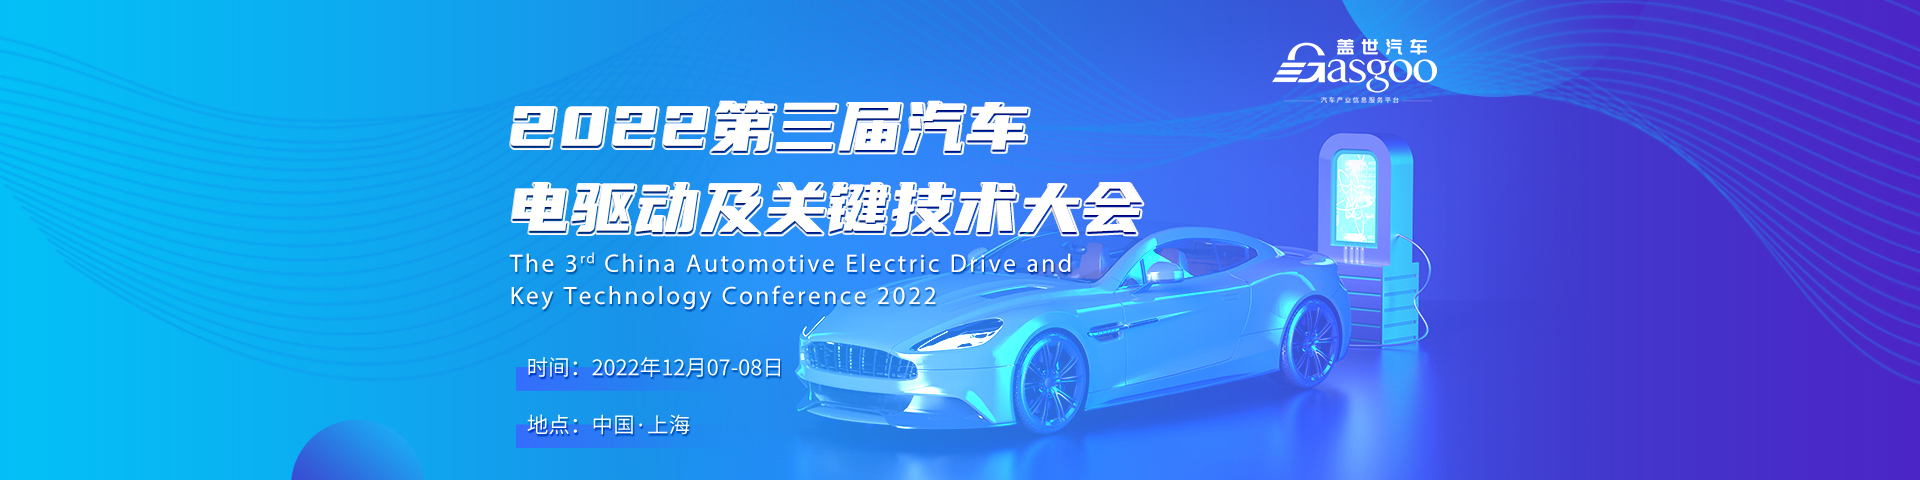 盖世汽车2022第三届汽车电驱动及关键技术大会